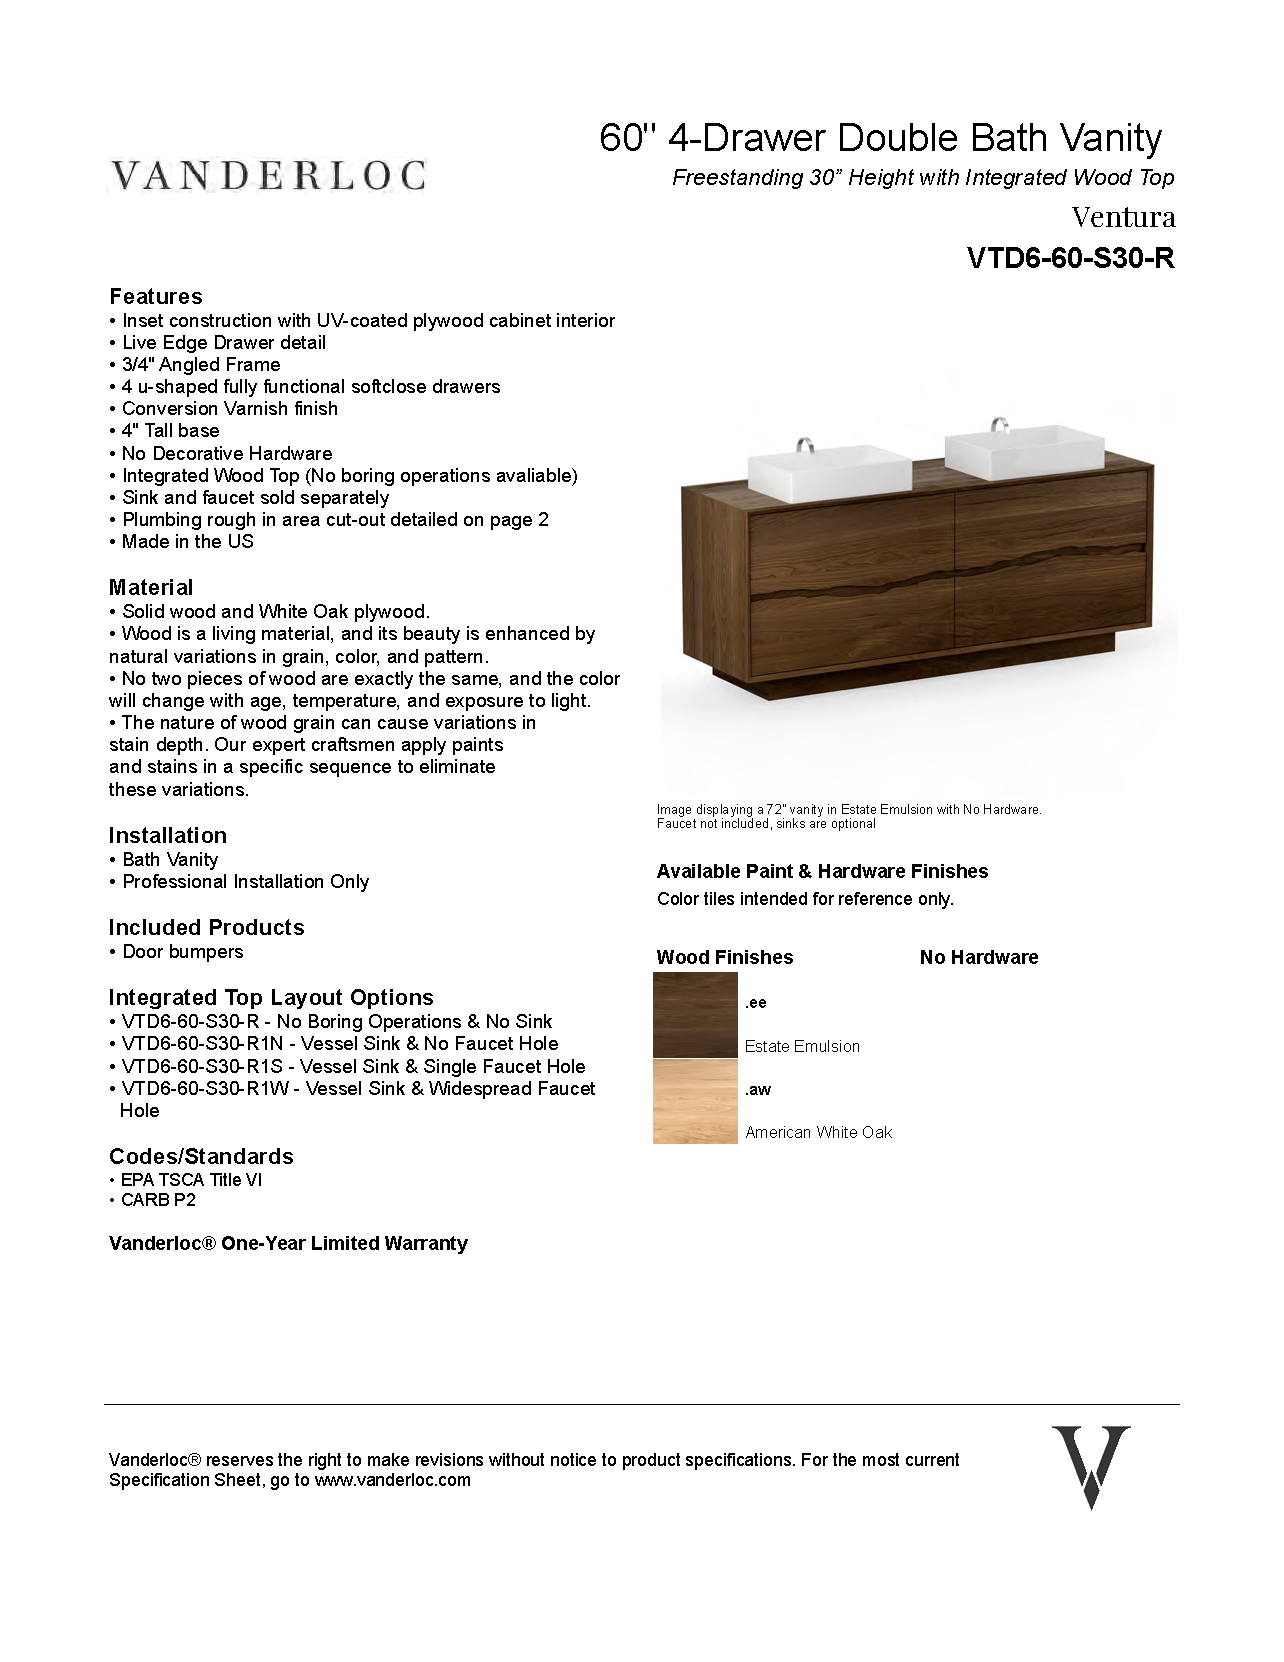 VTD6-R Specifications